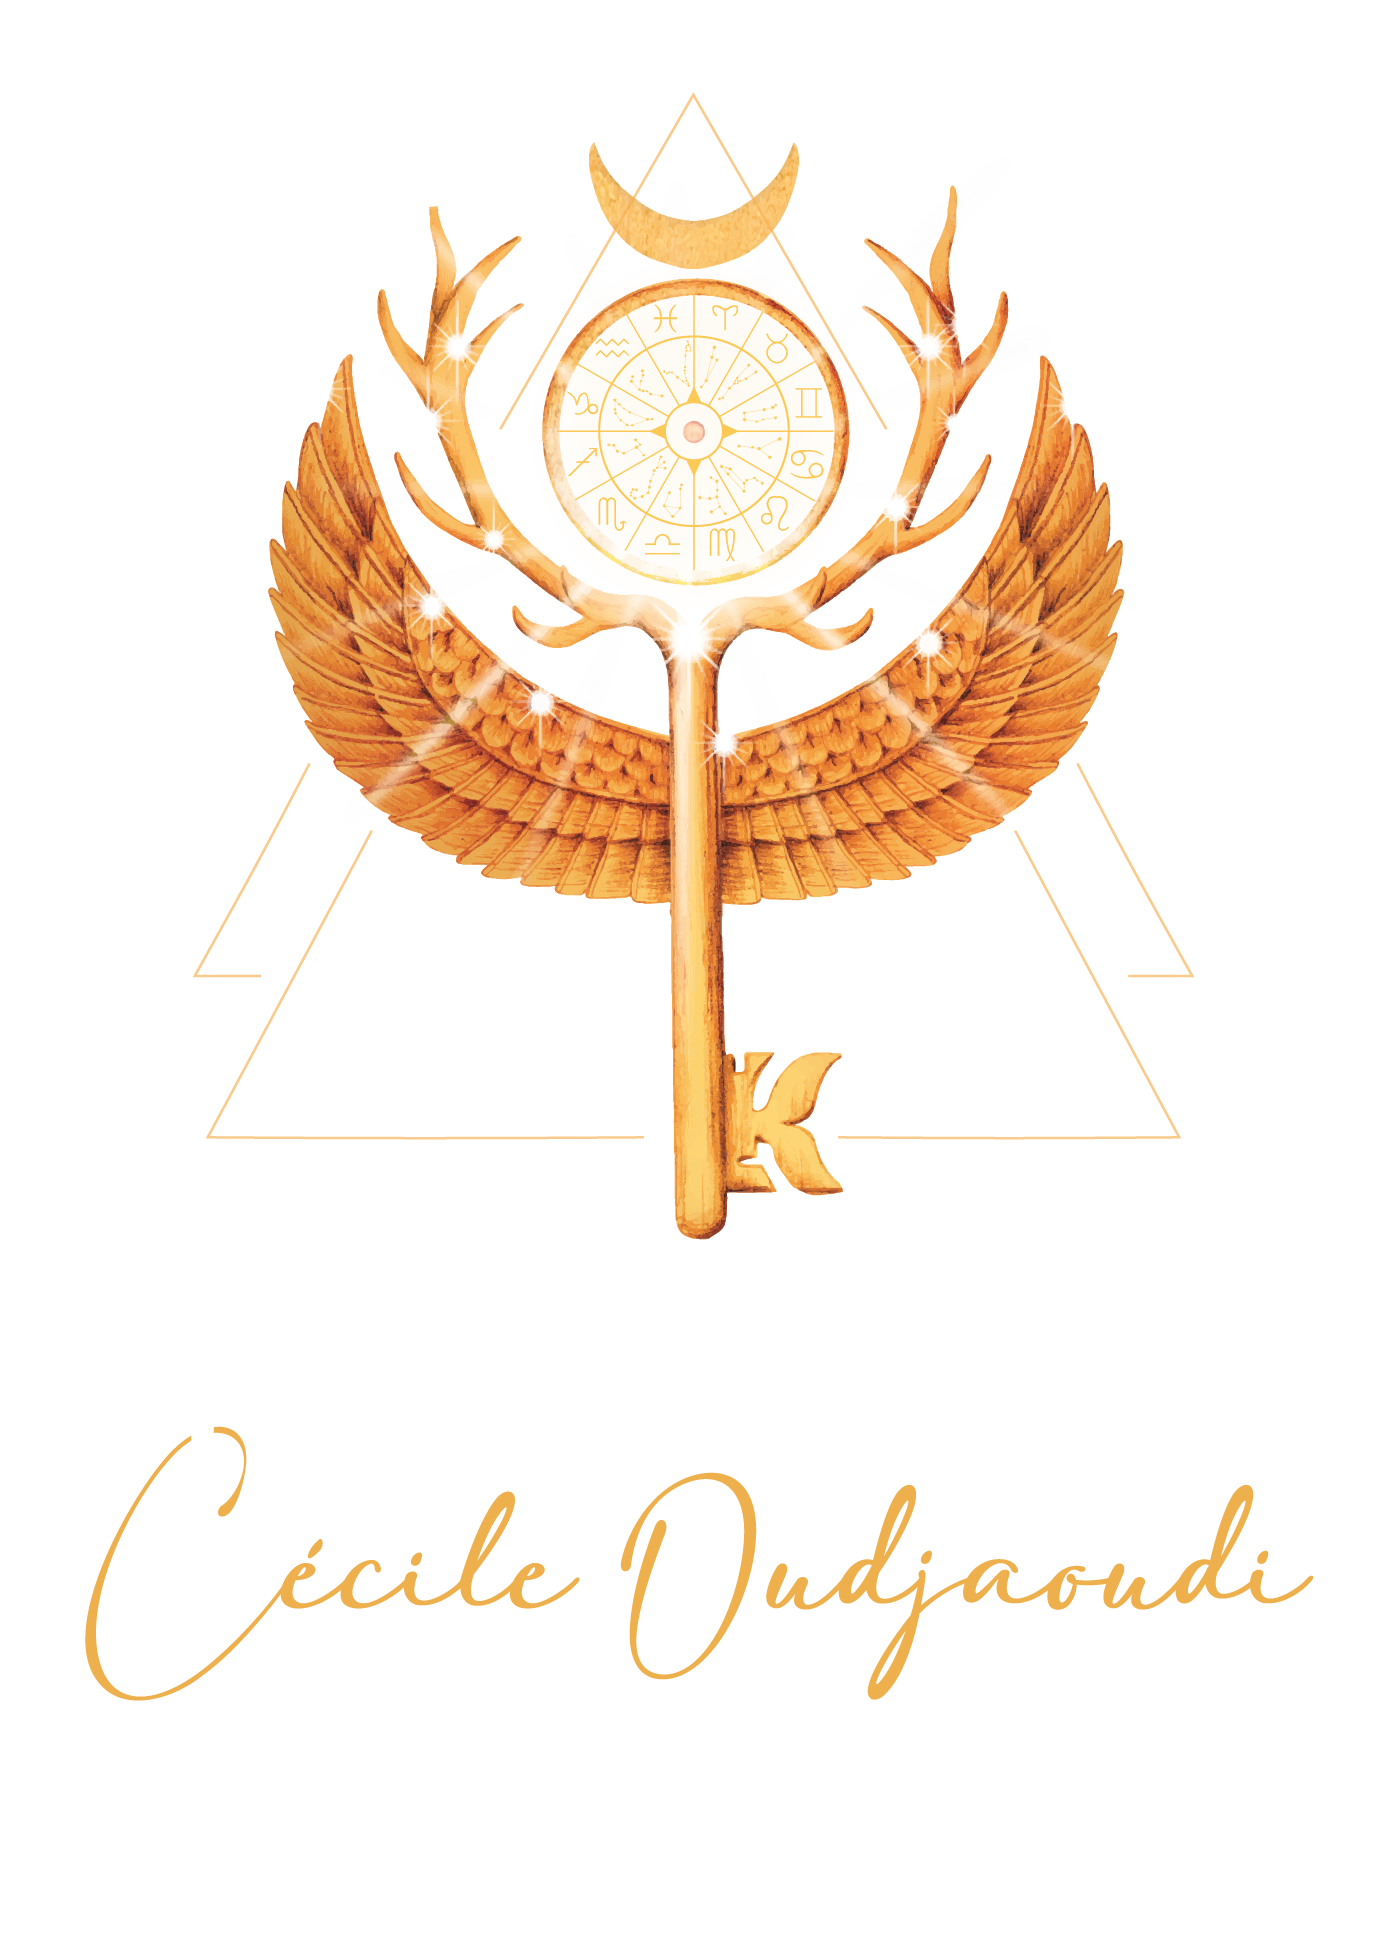 Elyanthisis - Cécile Oudjaoudi - Développement Personnel